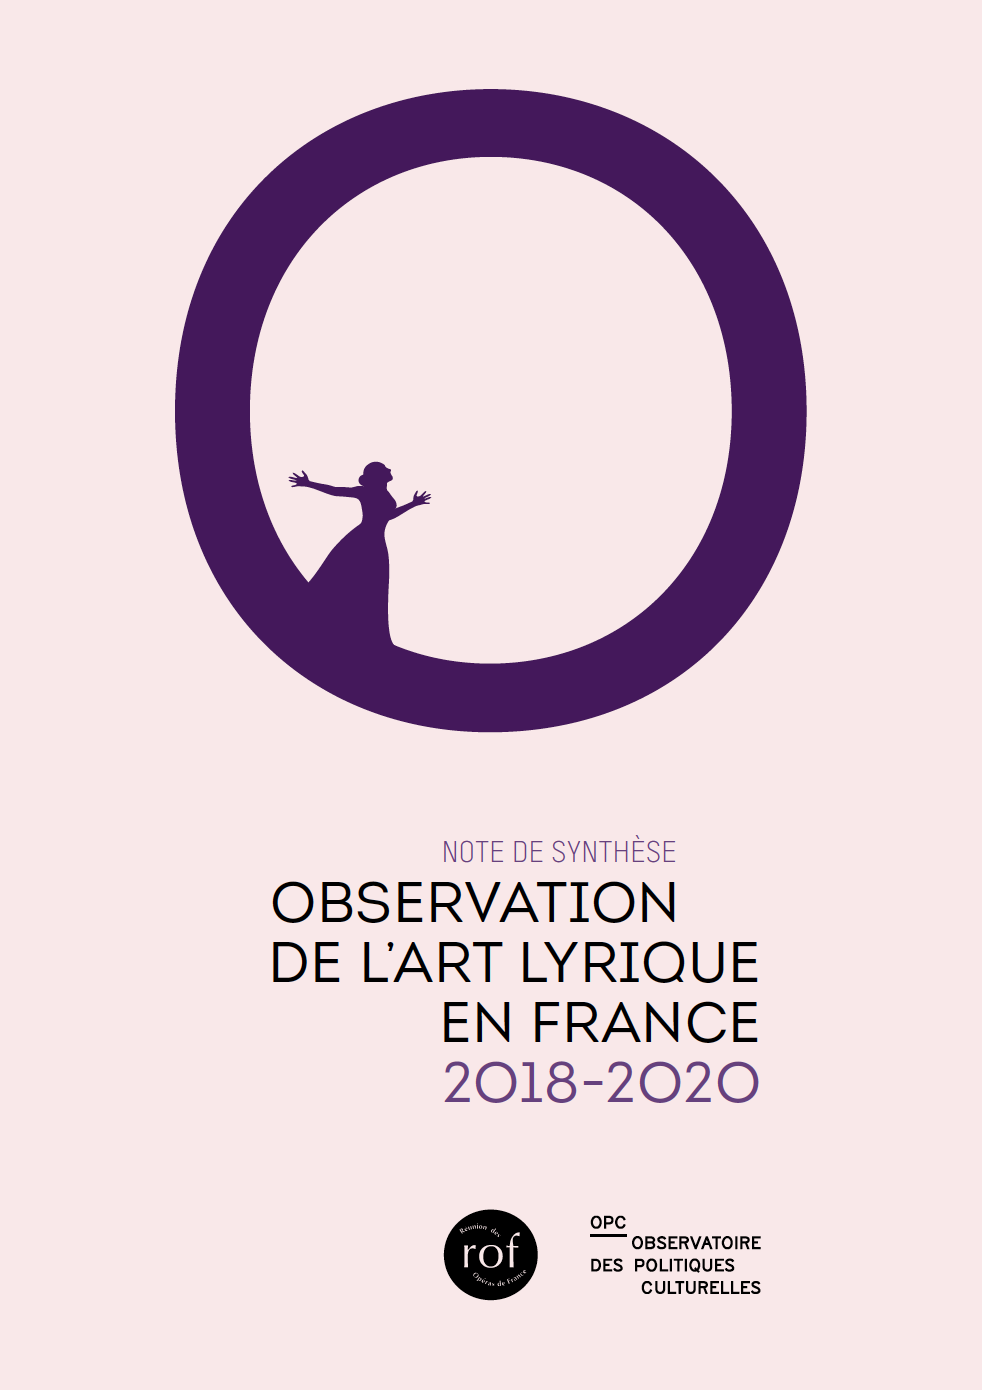 Couverture de la note Observation de l'art lyrique en France 2018-2020. Silhouette de femme qui chante.